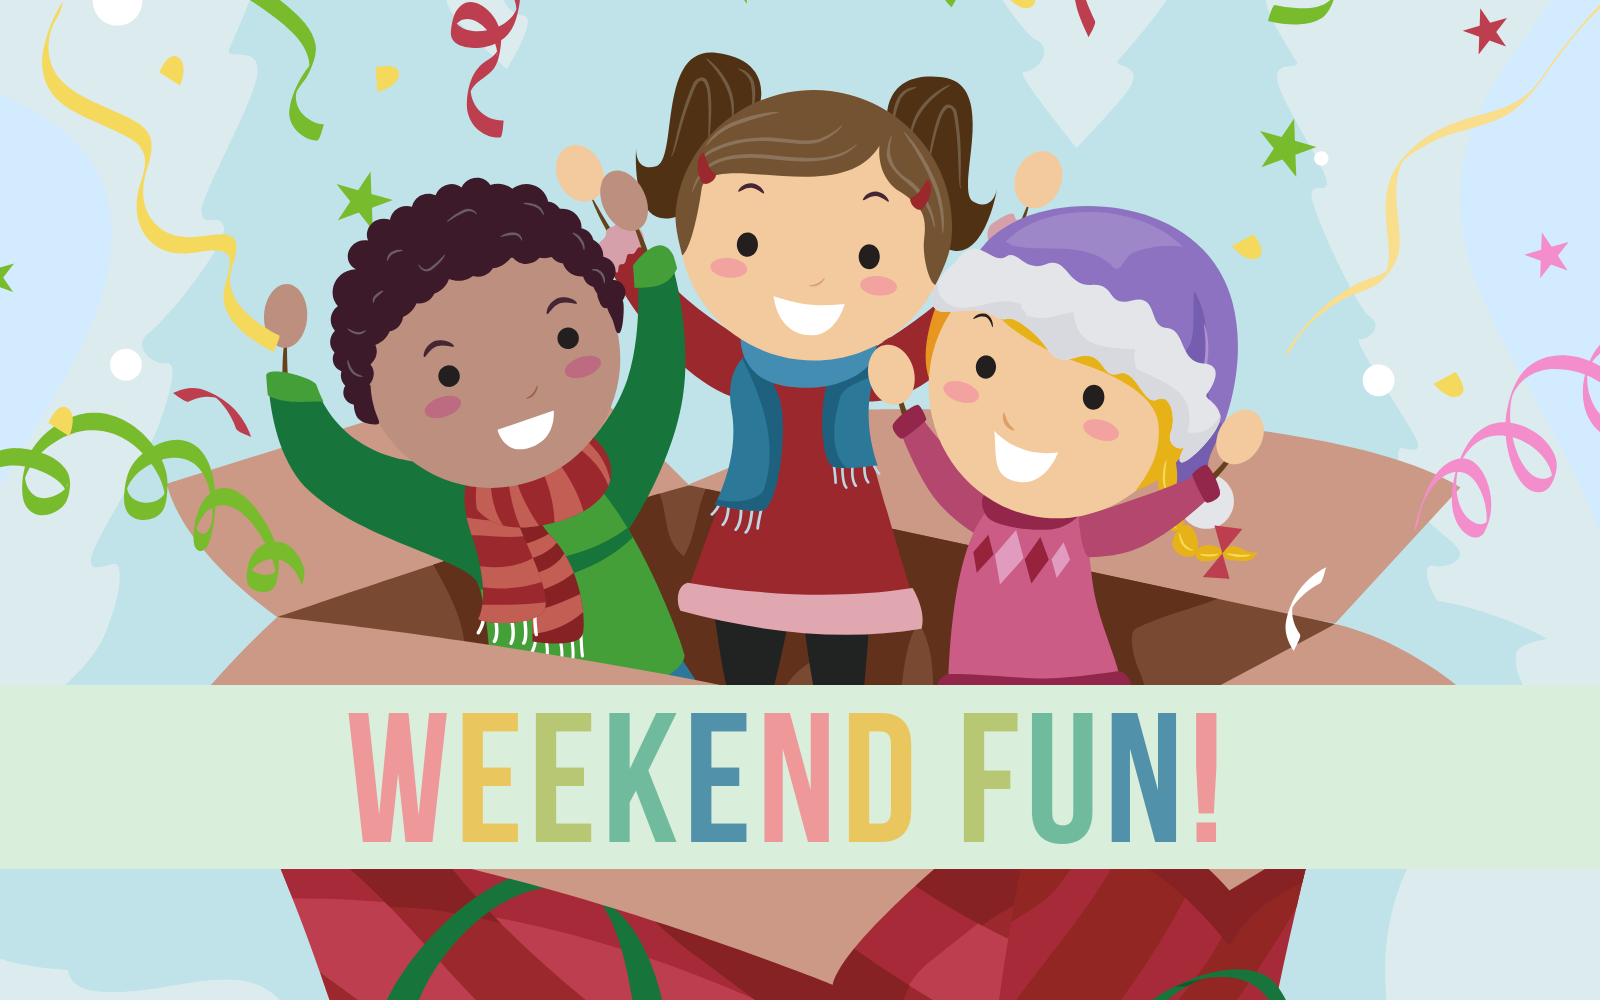 Weekend 16. Weekend fun. Weekend картинка для детей. Картинки weekend семьи. Fun weekends.